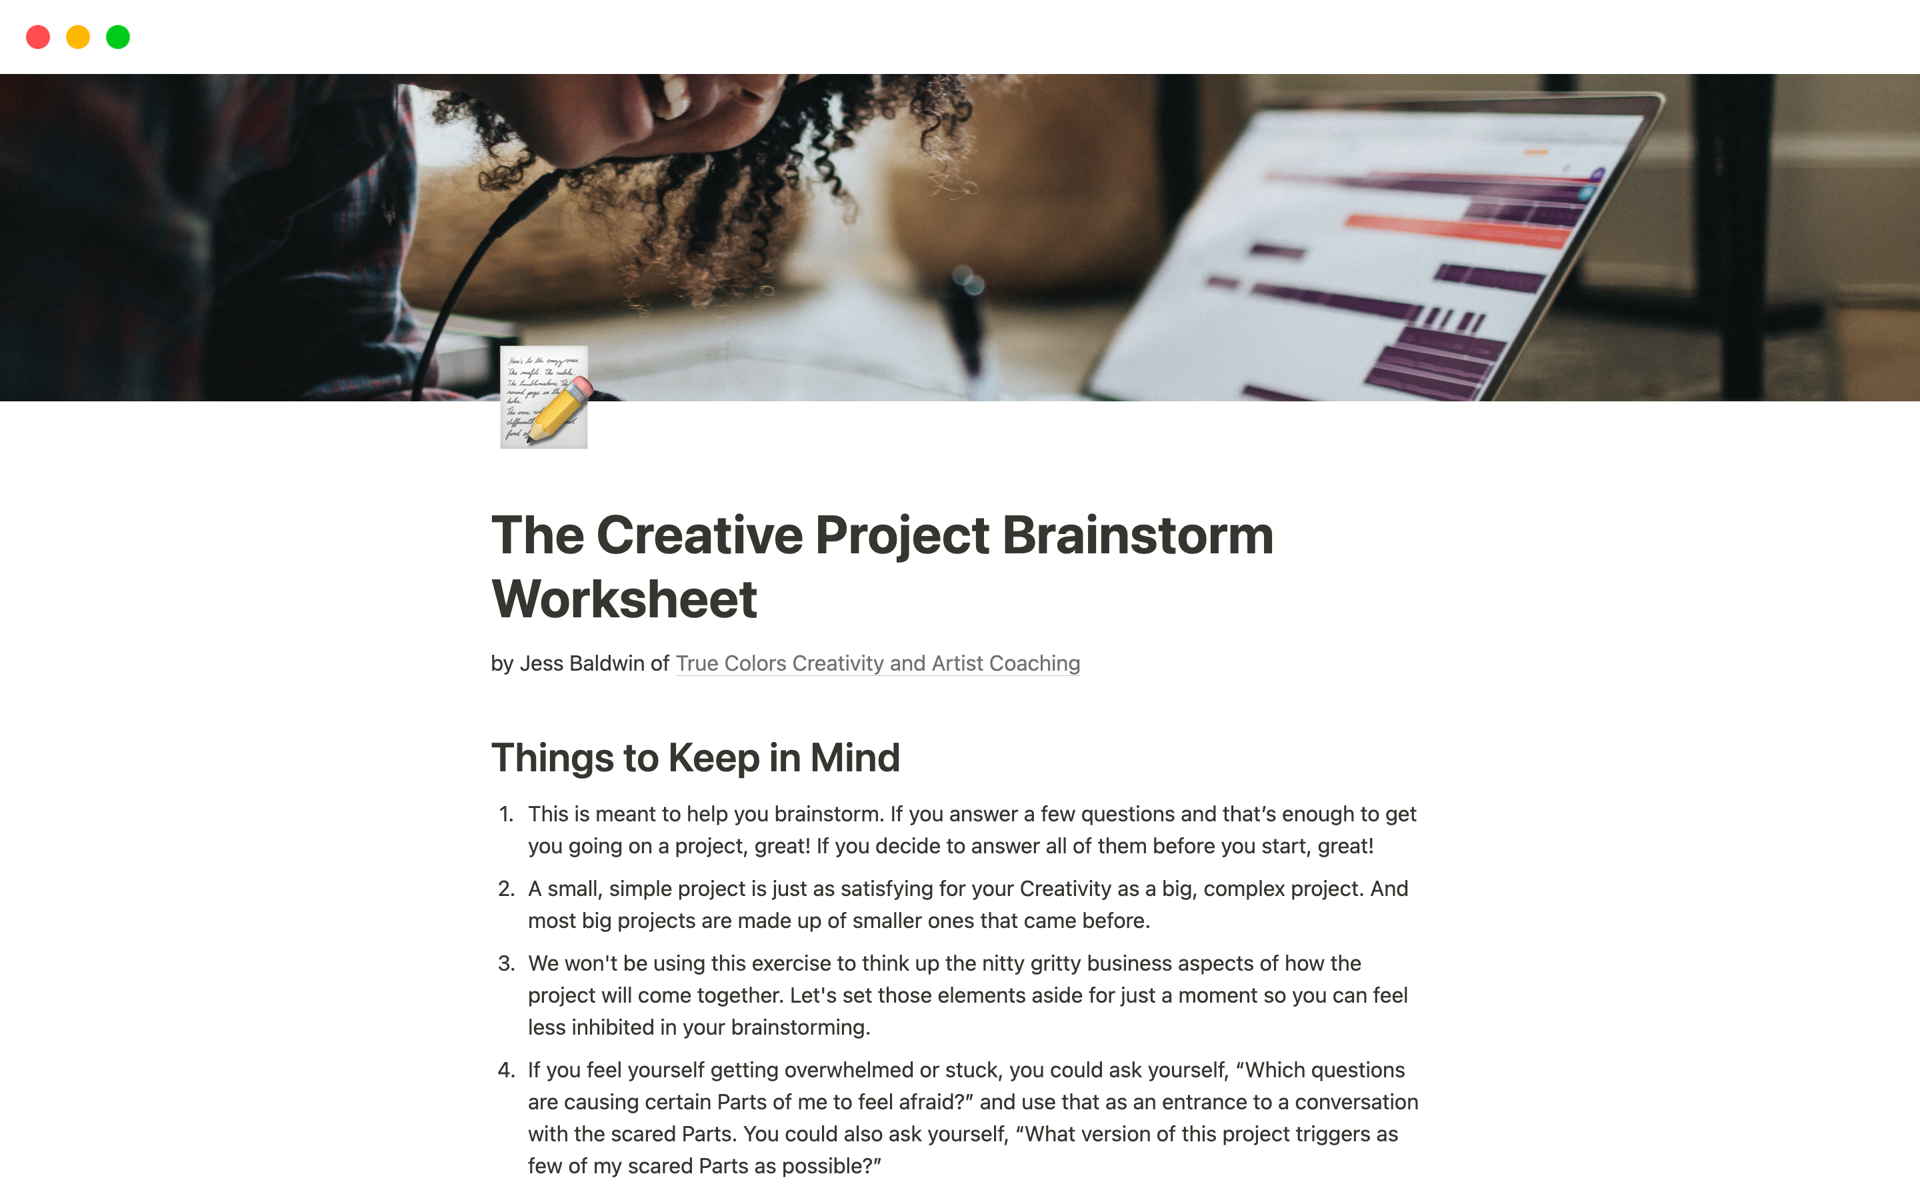 Vista previa de plantilla para The Creative Project Brainstorm Worksheet